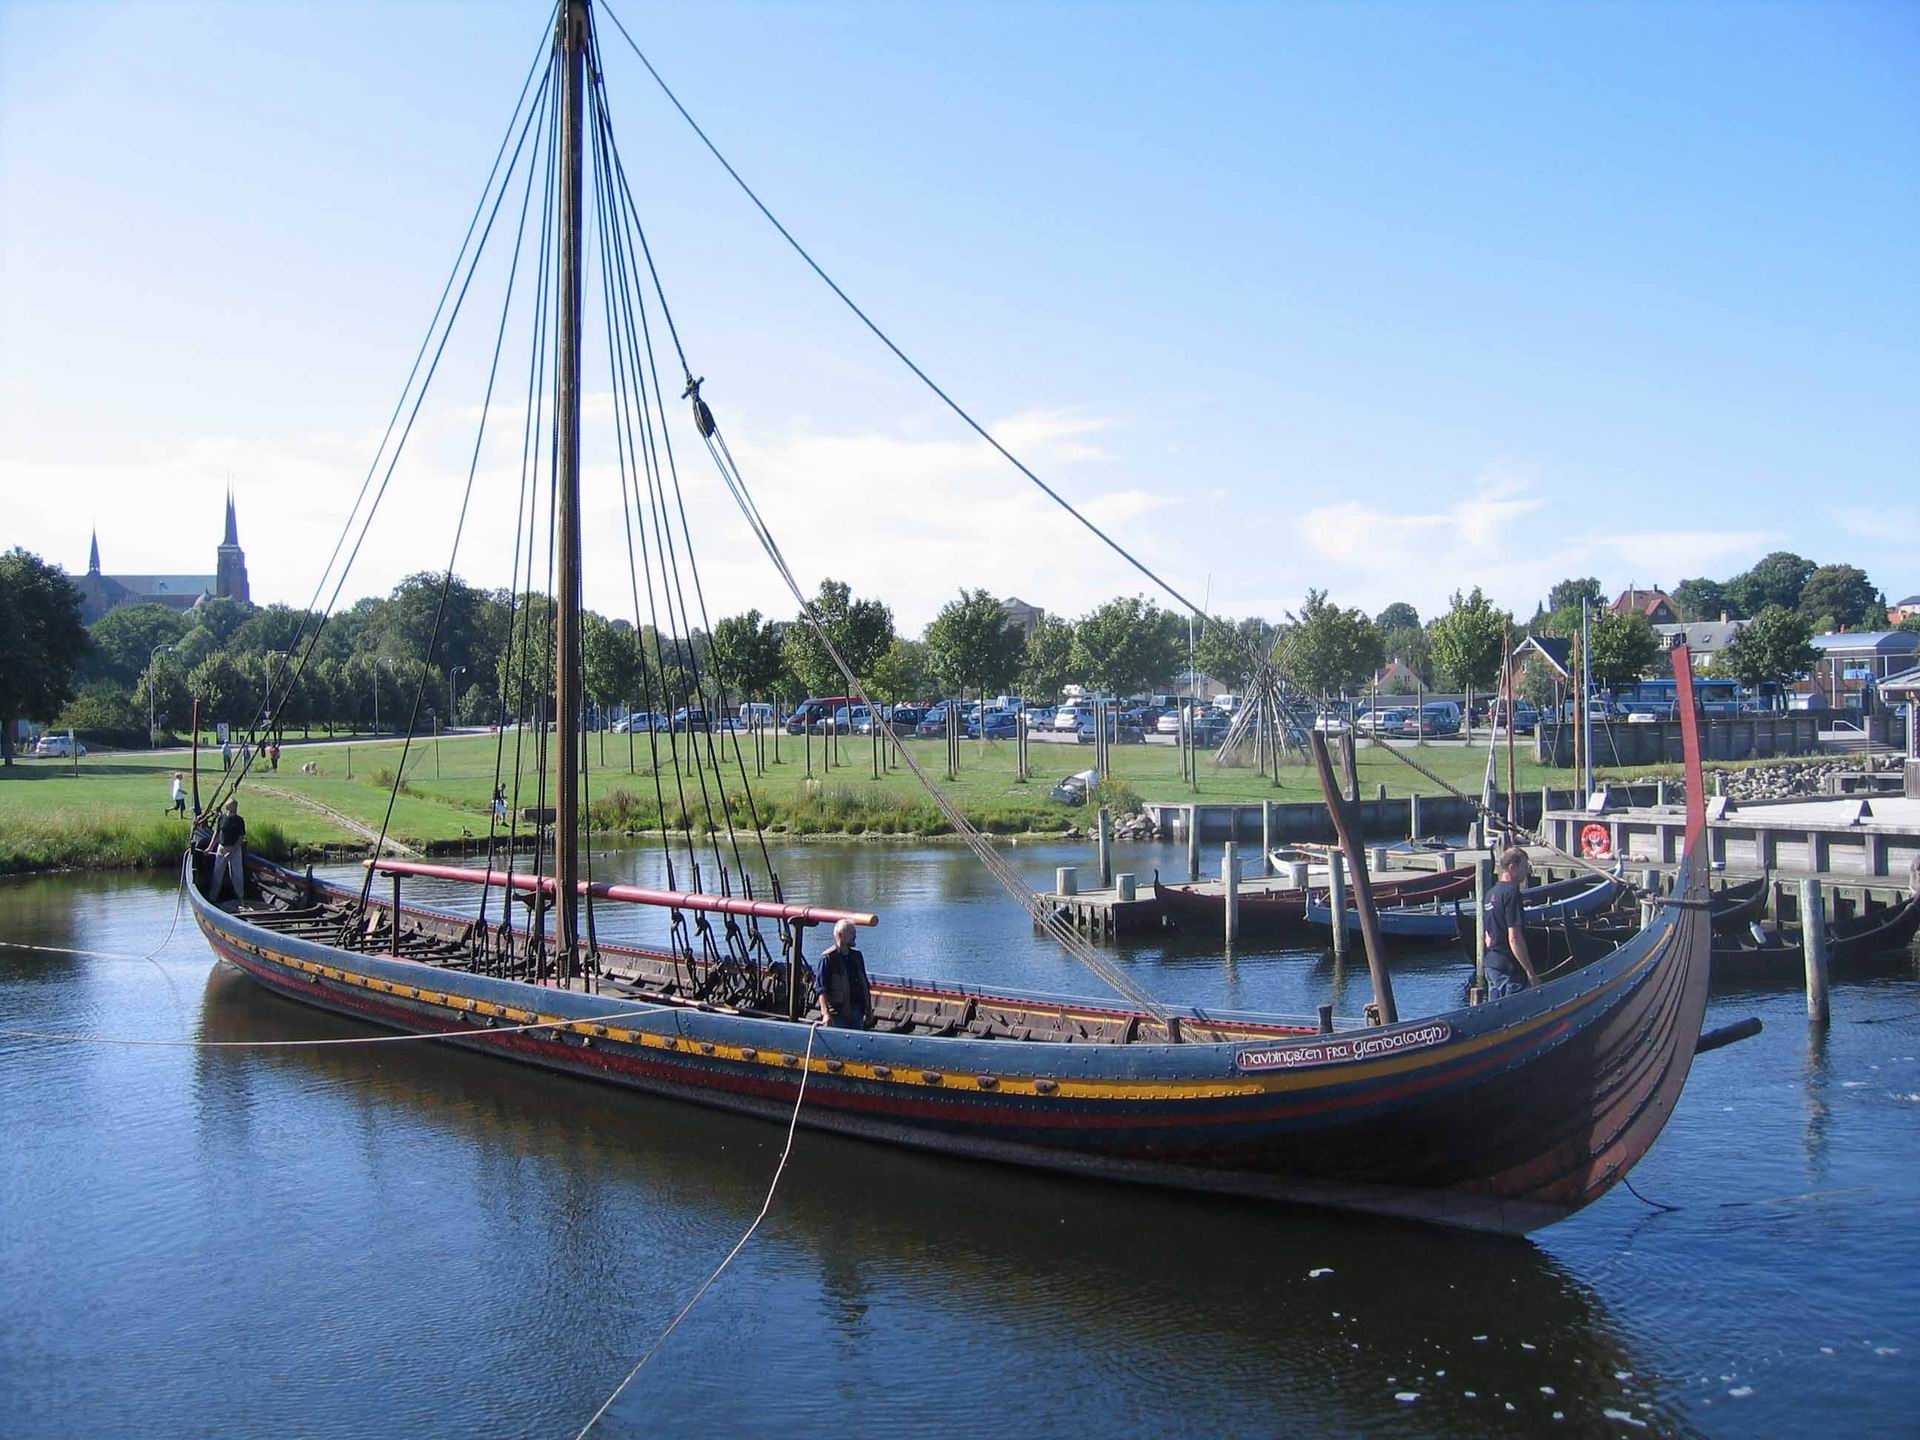 Viking Ship Museum Denmark - Vikingeskibsmuseet Roskilde , HD Wallpaper & Backgrounds